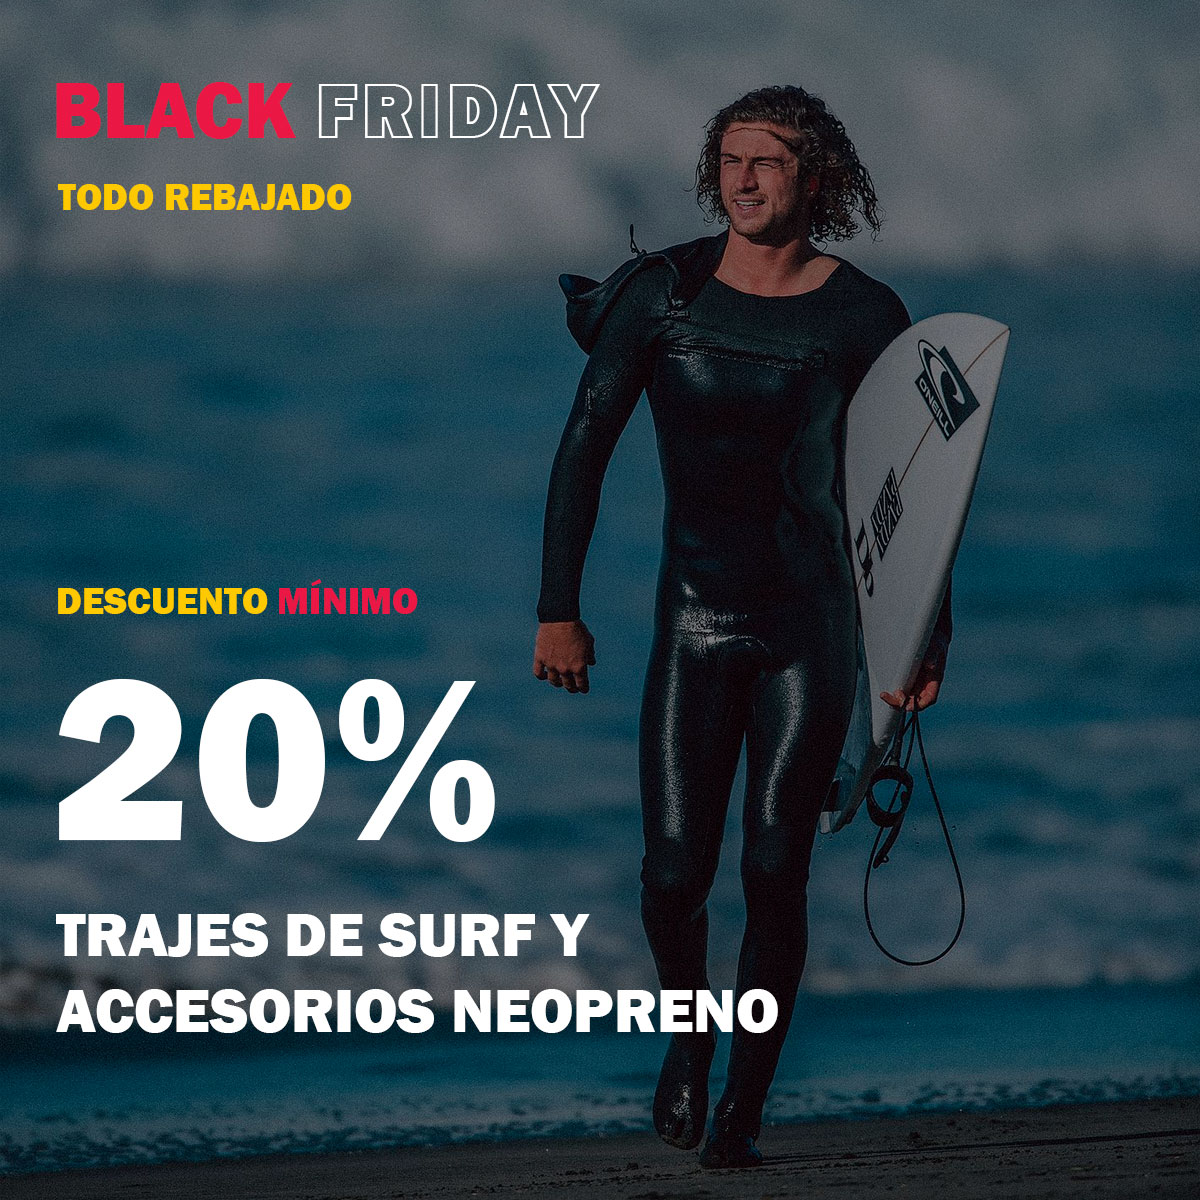 BLACK FRIDAY TRAJES DE SURF Y ACCESORIOS NEOPRENO